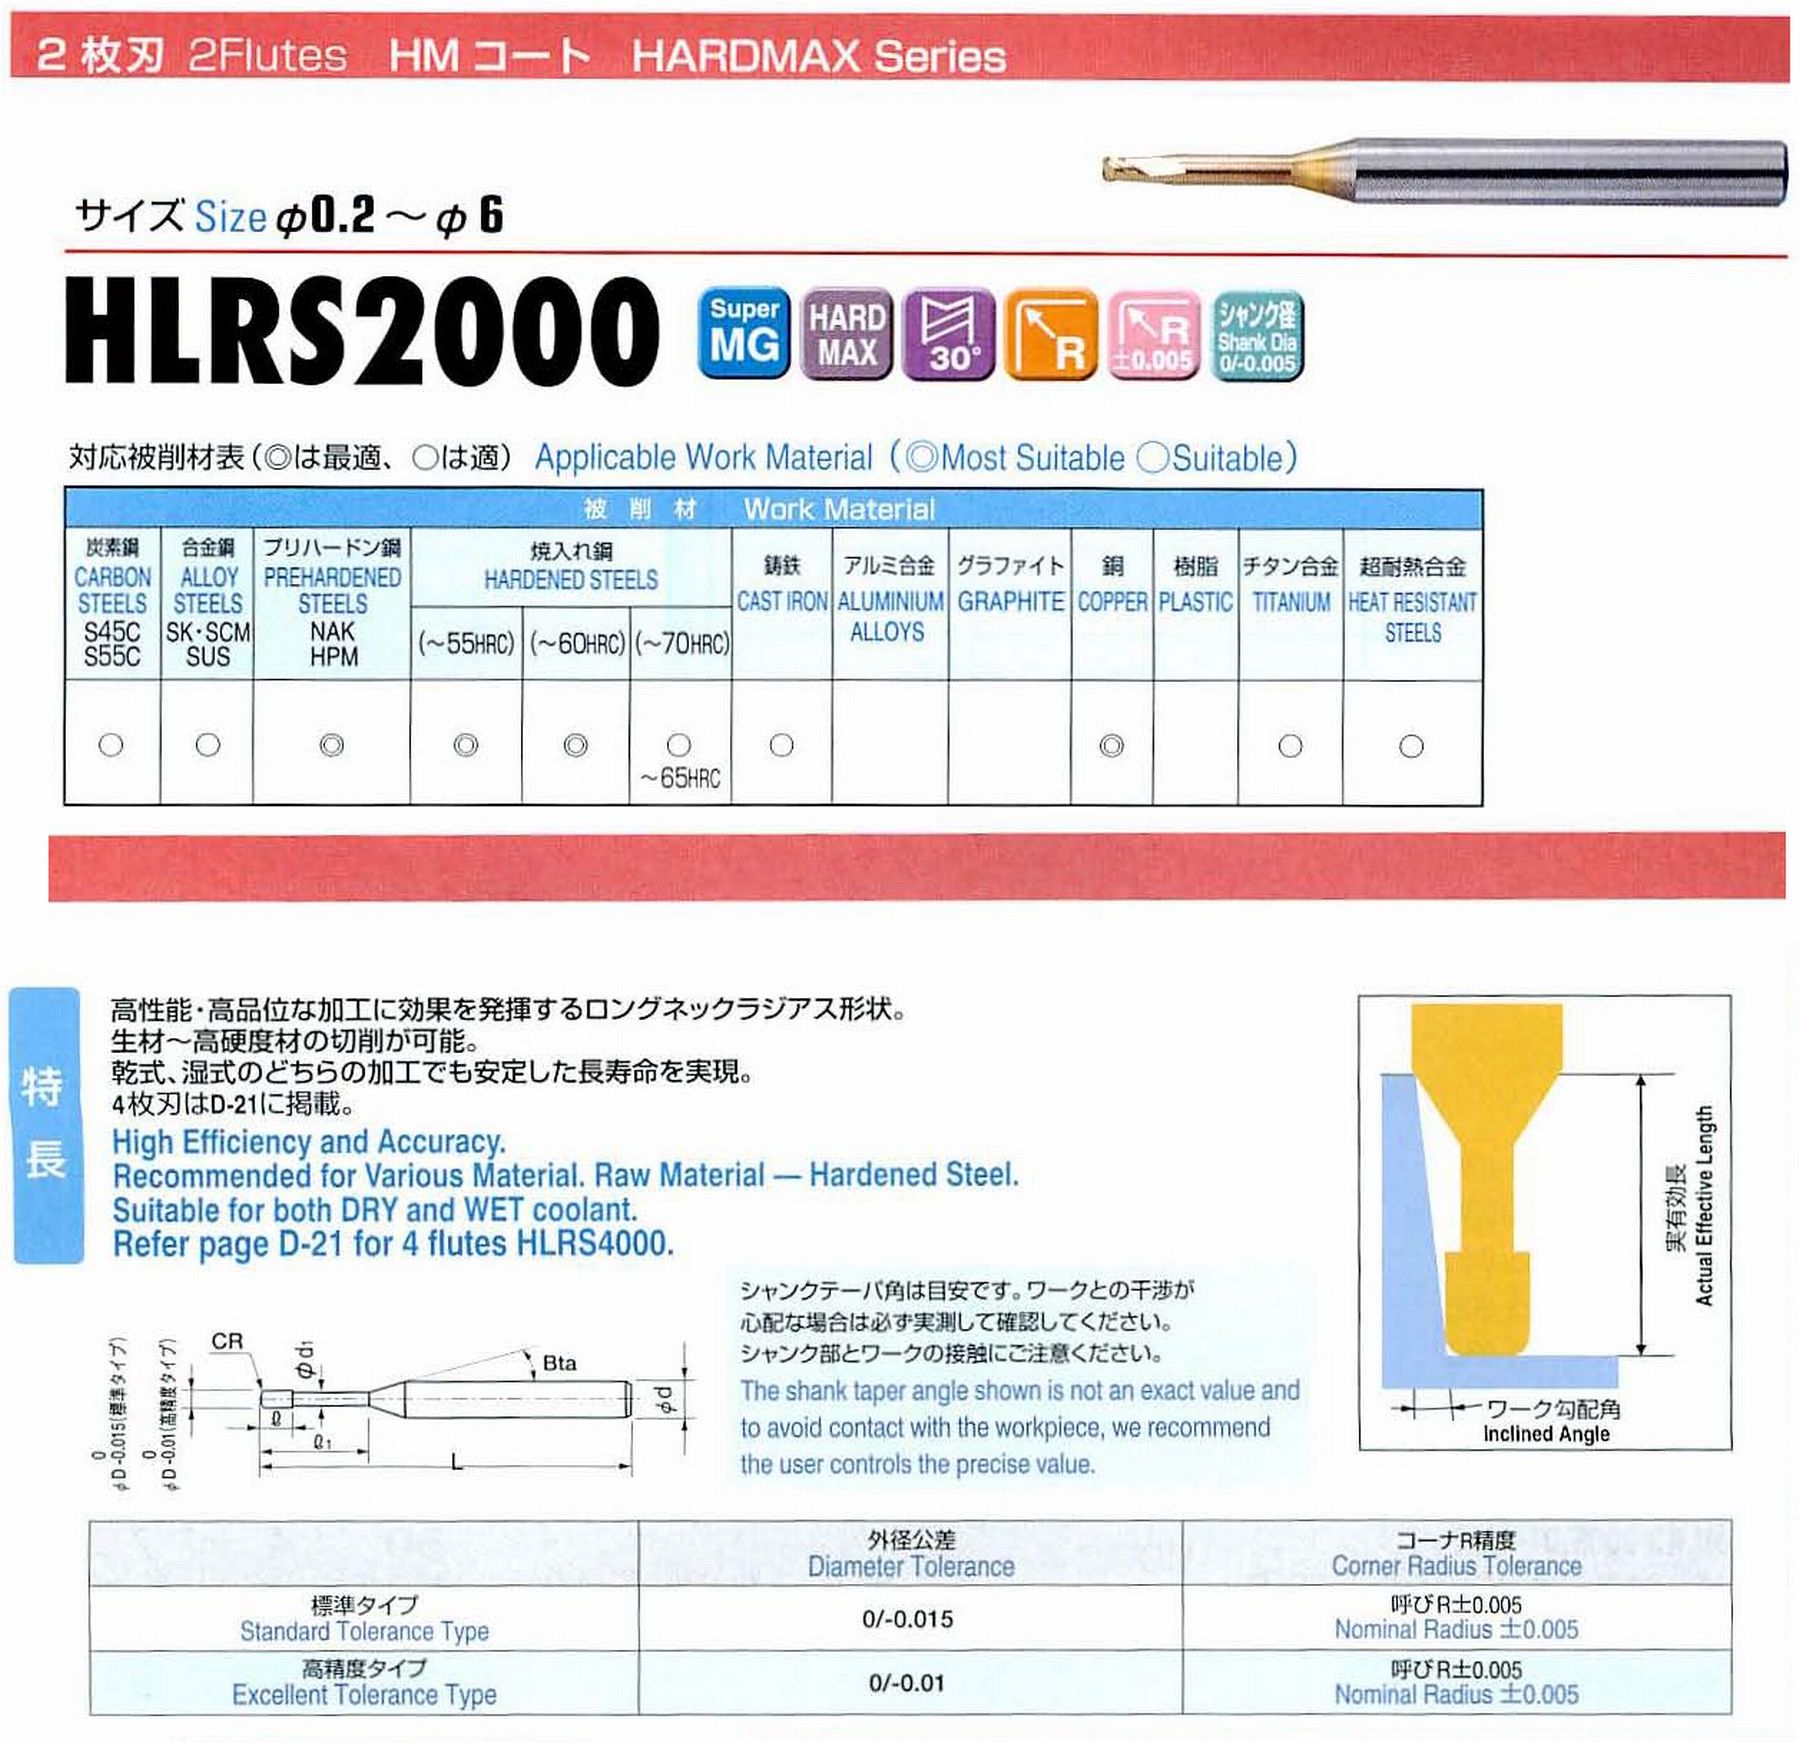 ユニオンツール 2枚刃 HLRS2010-01-020E 外径1 コーナ半径R0.1 有効長2 刃長1 首径0.95 シャンクテーパ角16° 全長50 シャンク径4